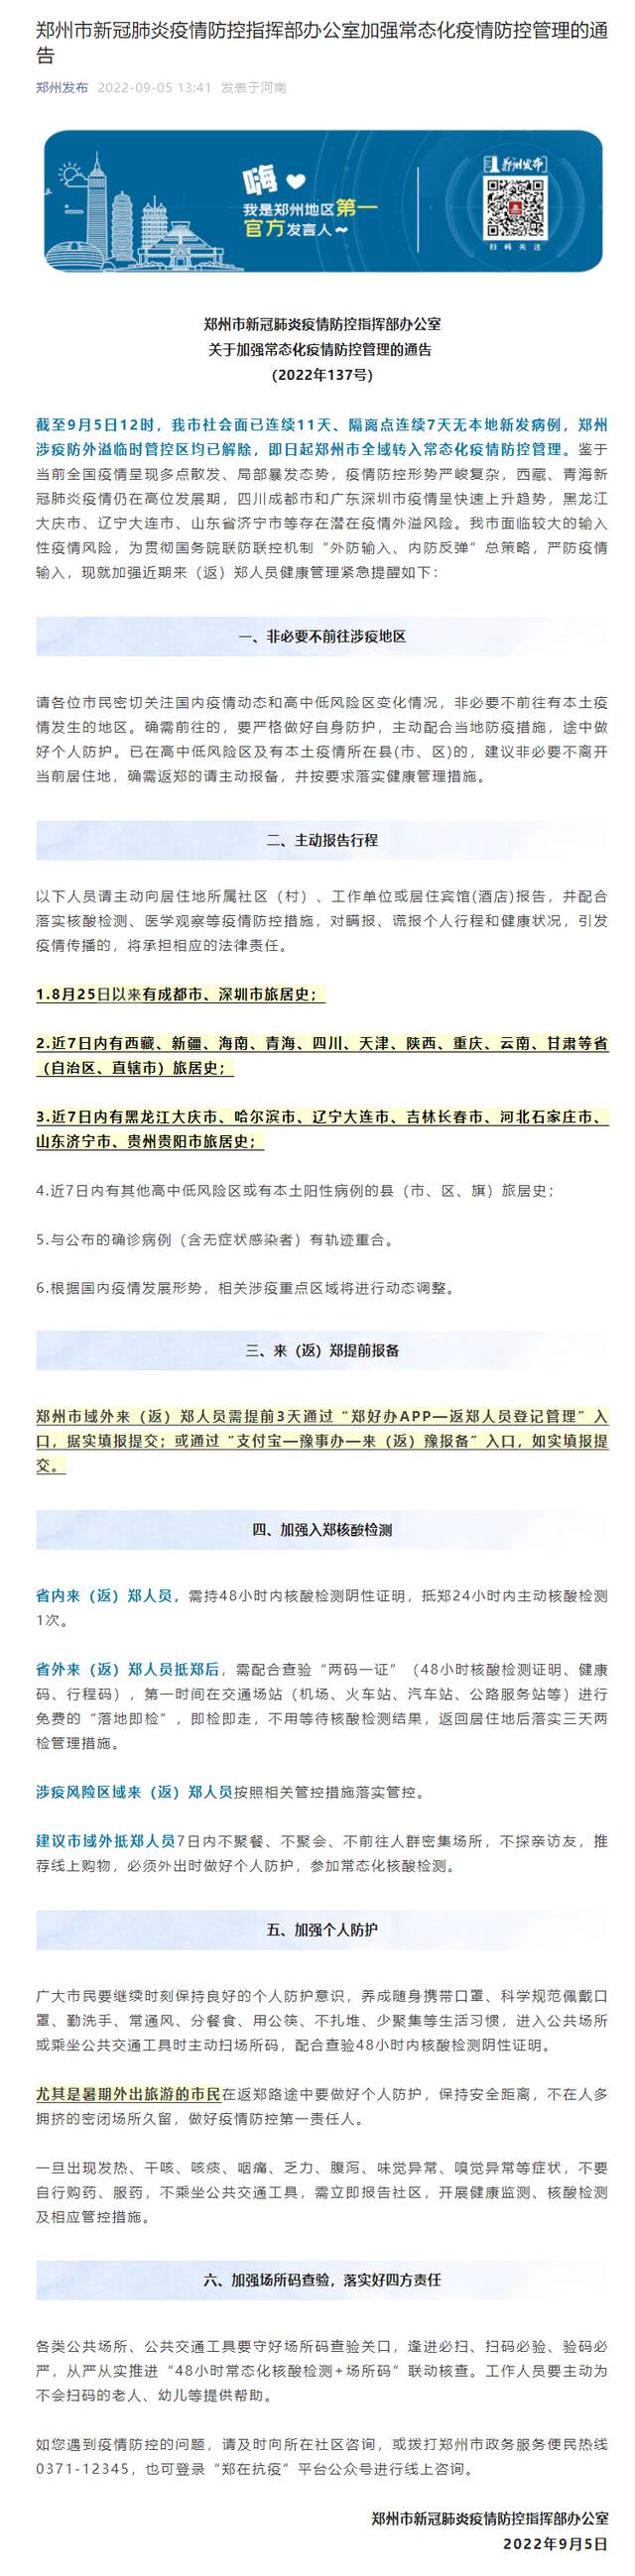 河南郑州即日起全域转入常态化疫情防控管理